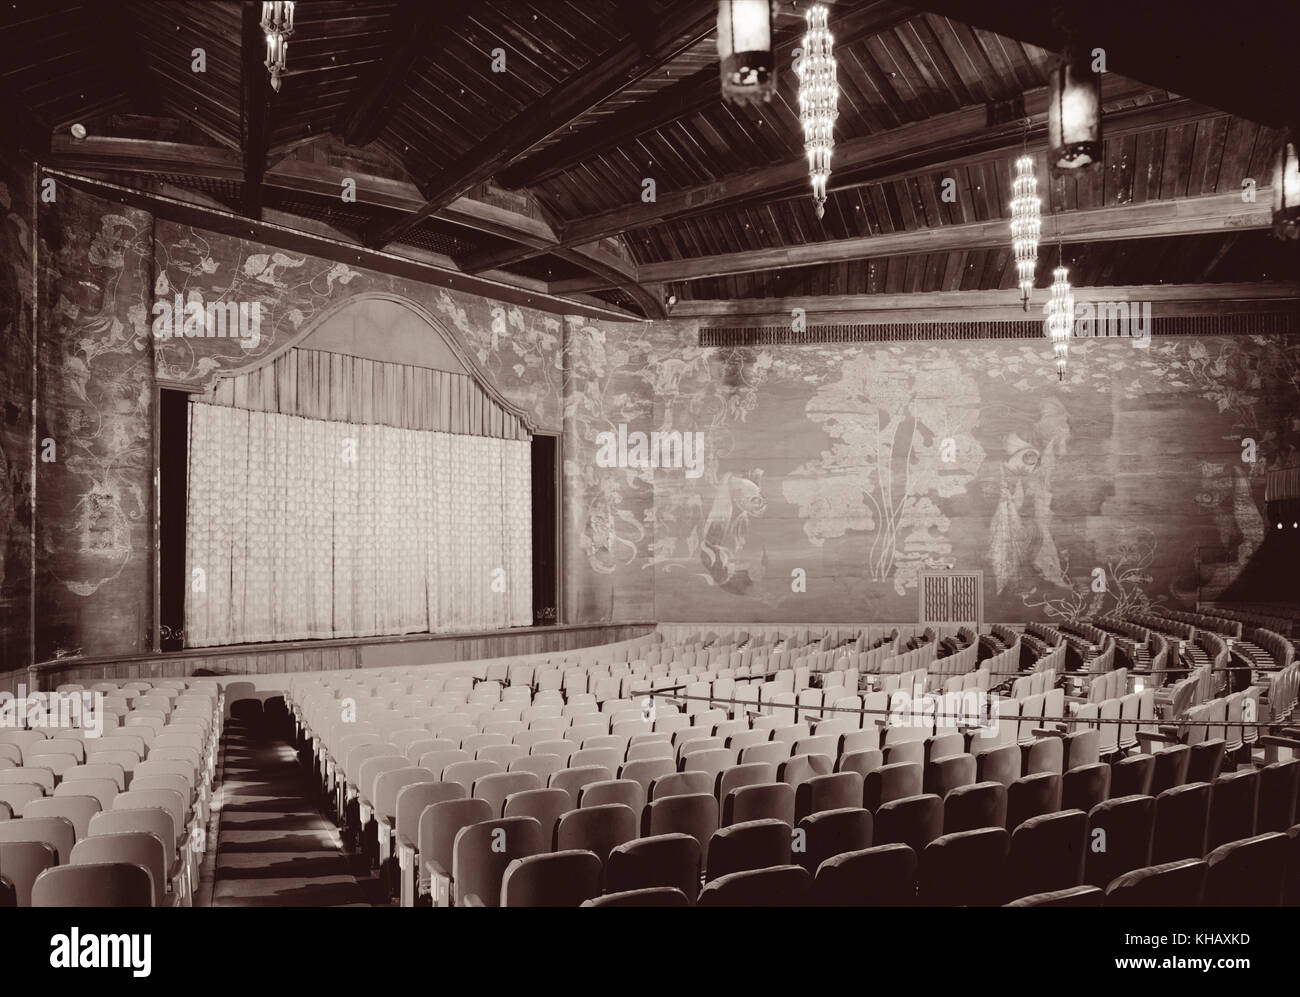 Innenansicht des Paramount Theatre in Palm Beach, Florida. Die historische Film Palast wurde 1926 gebaut und entworfen, im maurischen Erweckung und Spanish Colonial Revival Stil von Joseph Urban als stummfilmkino Kurz vor dem Aufkommen des Tonfilms''. (Foto c 1972) Stockfoto